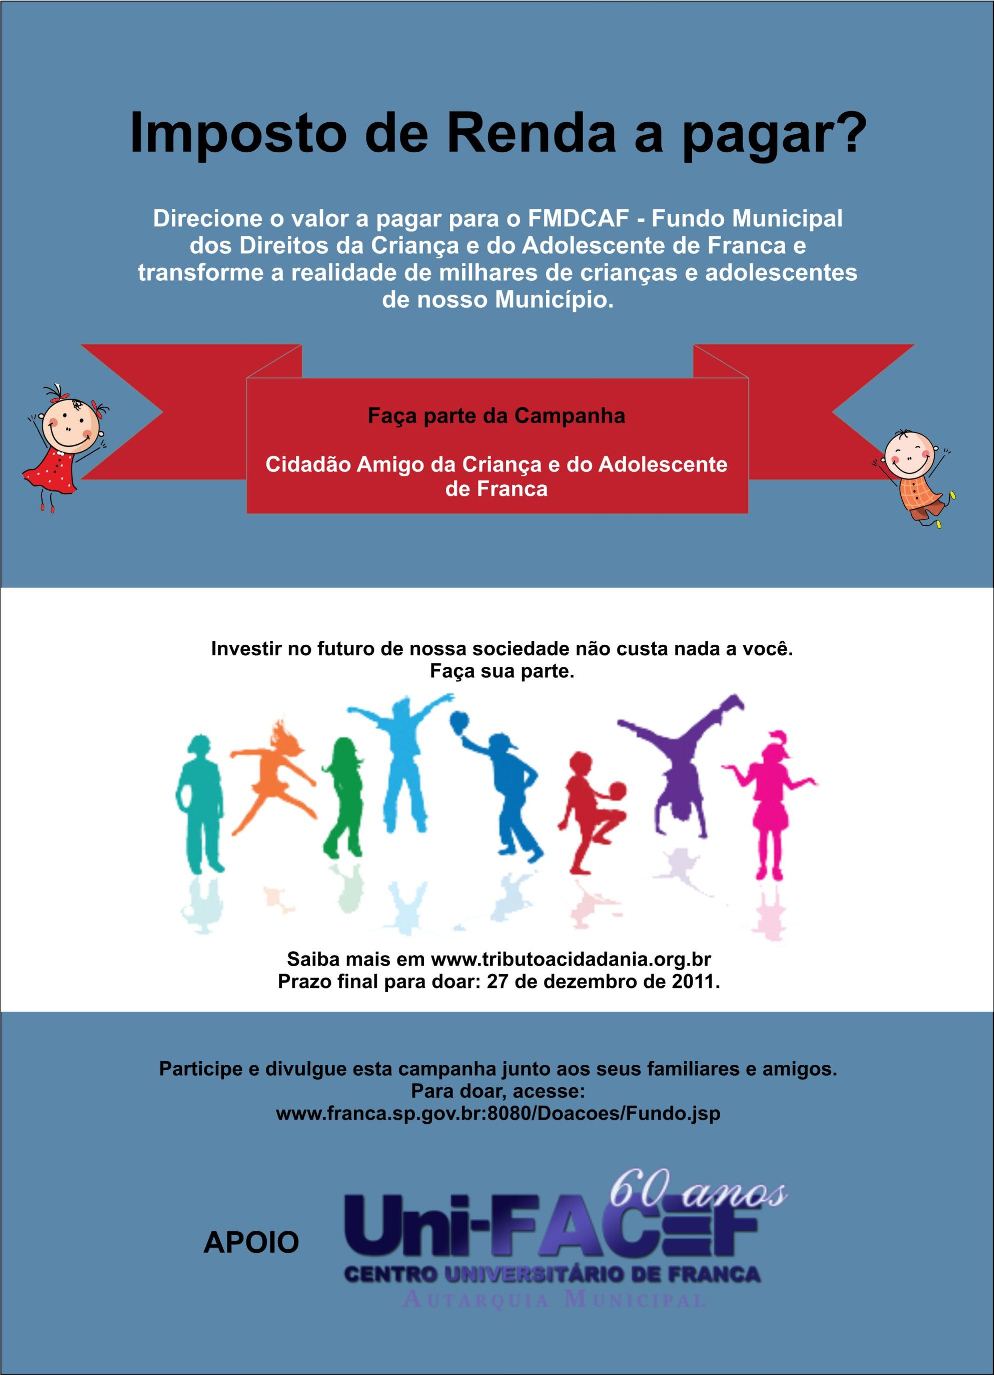 Reverta diretamente seu Imposto de Renda a pagar para o Fundo Municipal dos Direitos da Criança de Adolescente de Franca (FMDCAF)